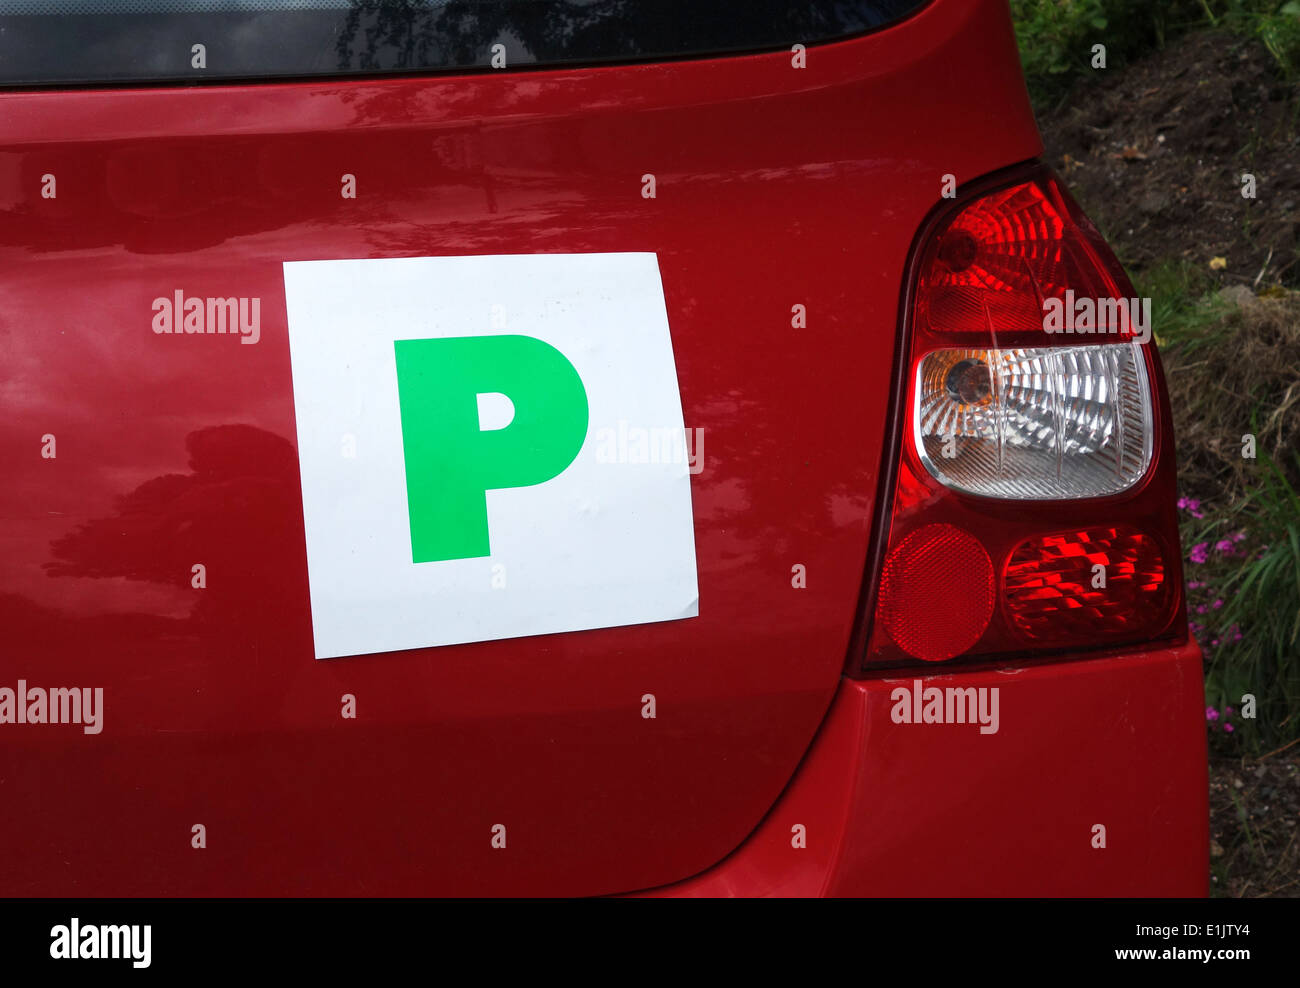 Verde ' P ' piastre su una vettura in Inghilterra indicano che il conducente ha recentemente superato l'esame di guida Foto Stock